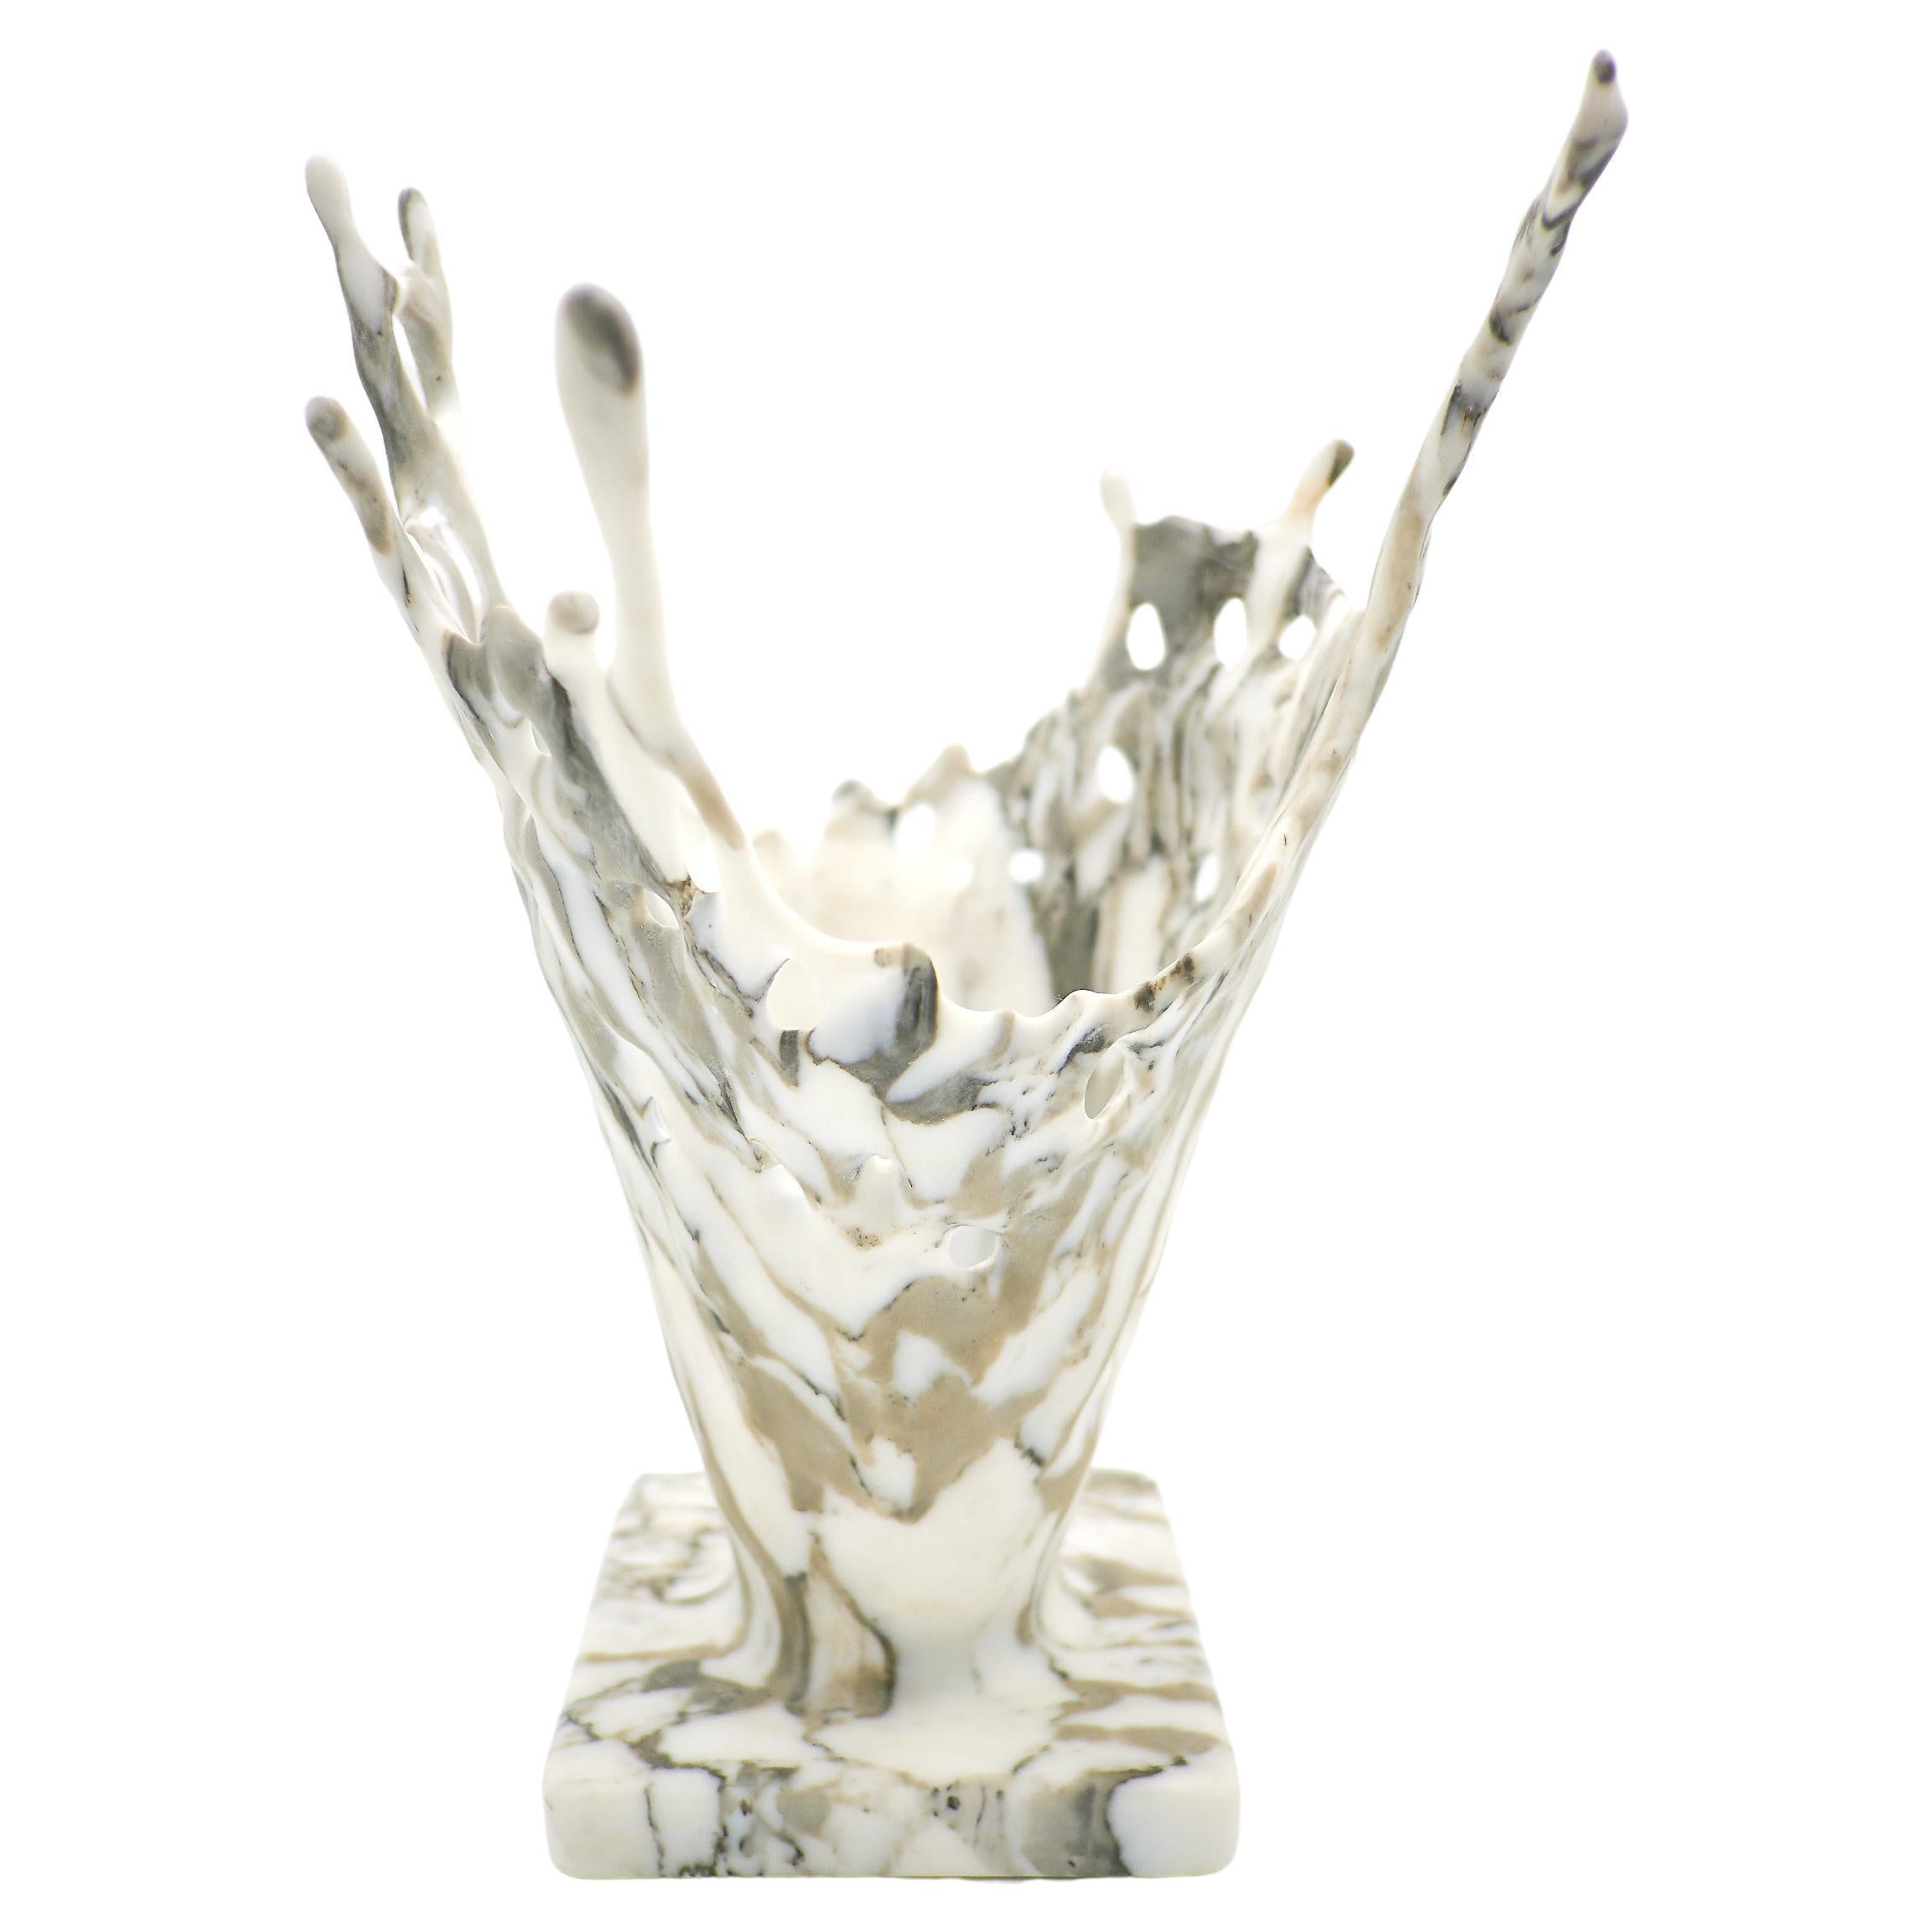 21st Century by Bruno Tarabella "SPLASH" Sculpture Marble Vase